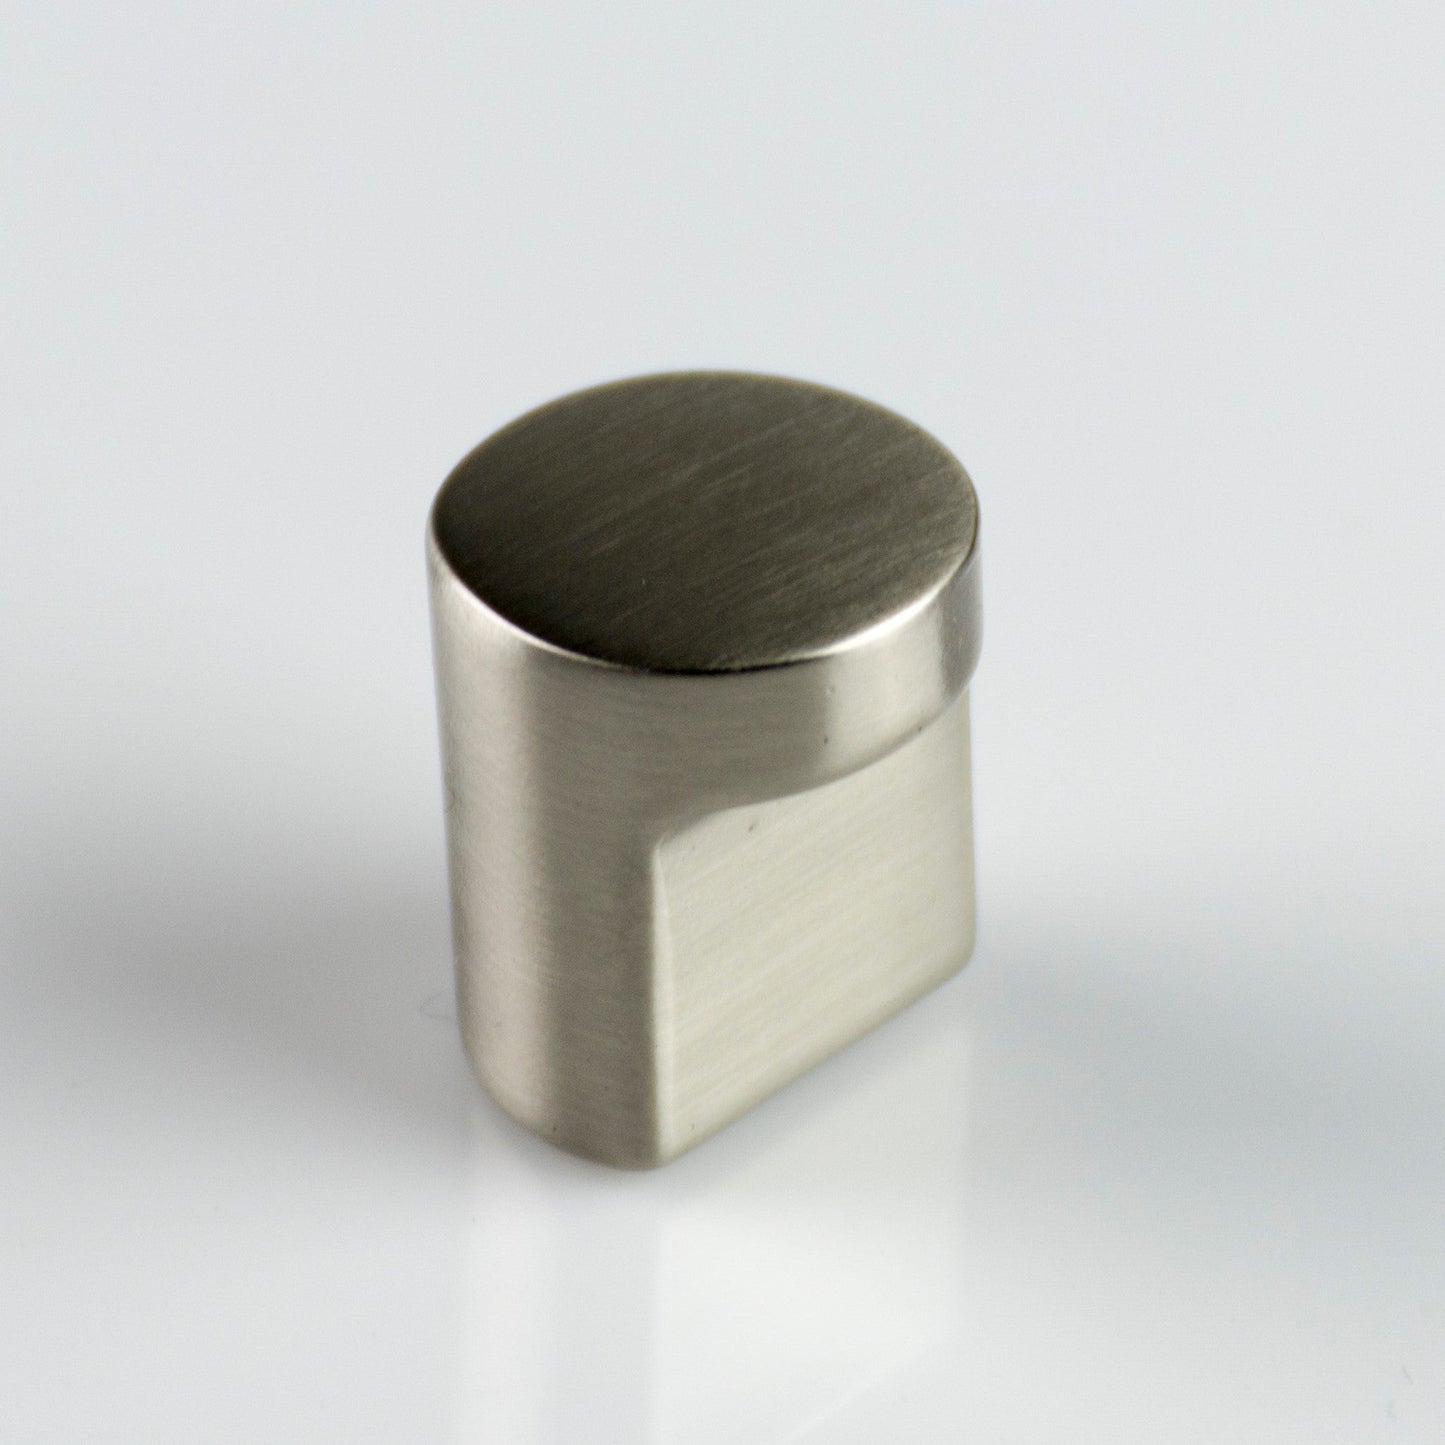 ZEN Design Radio 0.63" Diameter Brushed Nickel Cabinet Knob